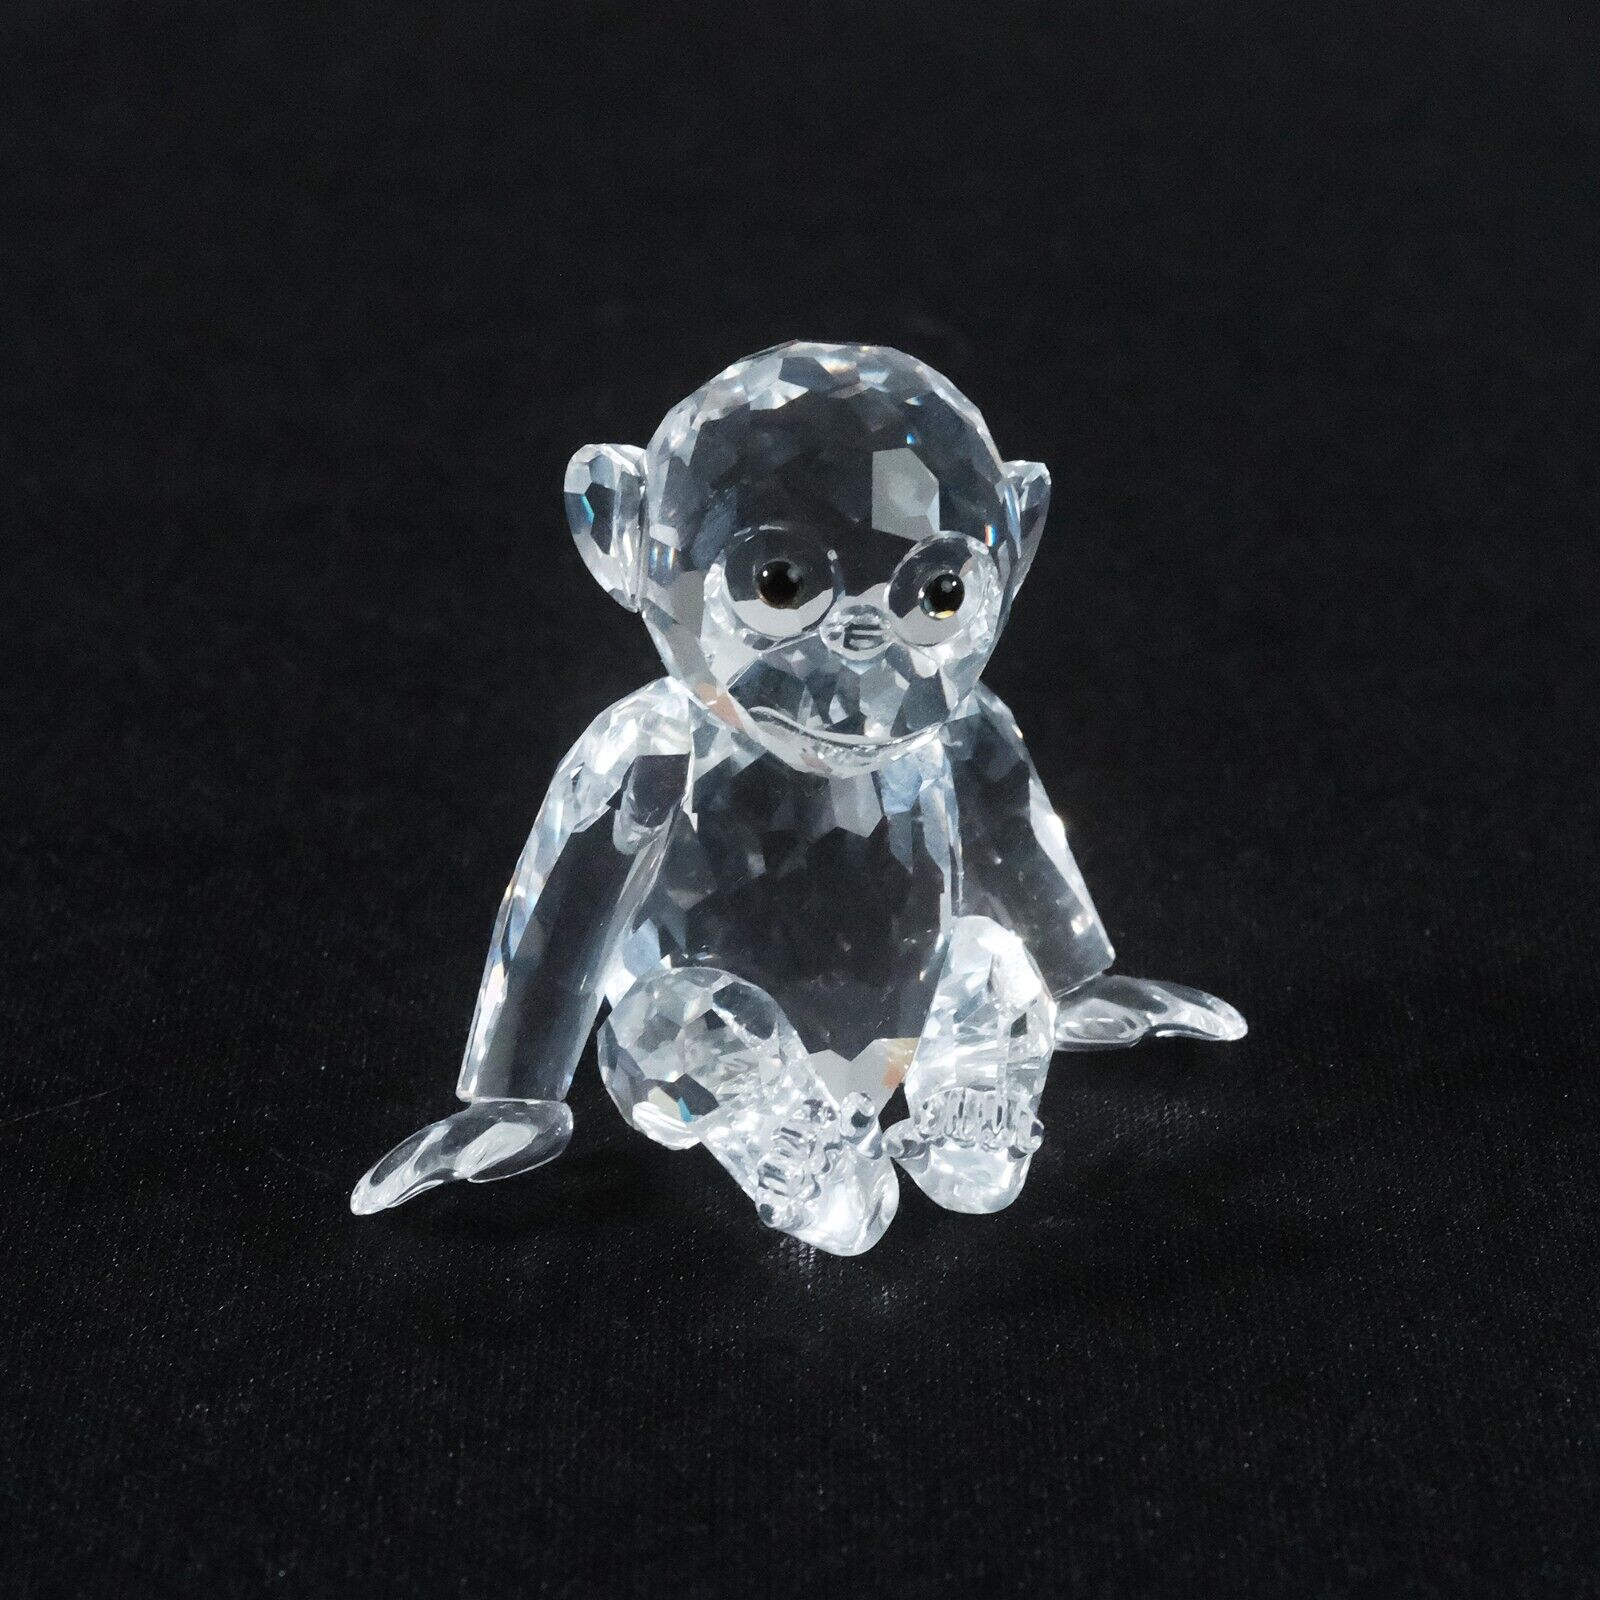 Swarovski Crystal Figurine Chimpanzee Monkey 221625 No Box